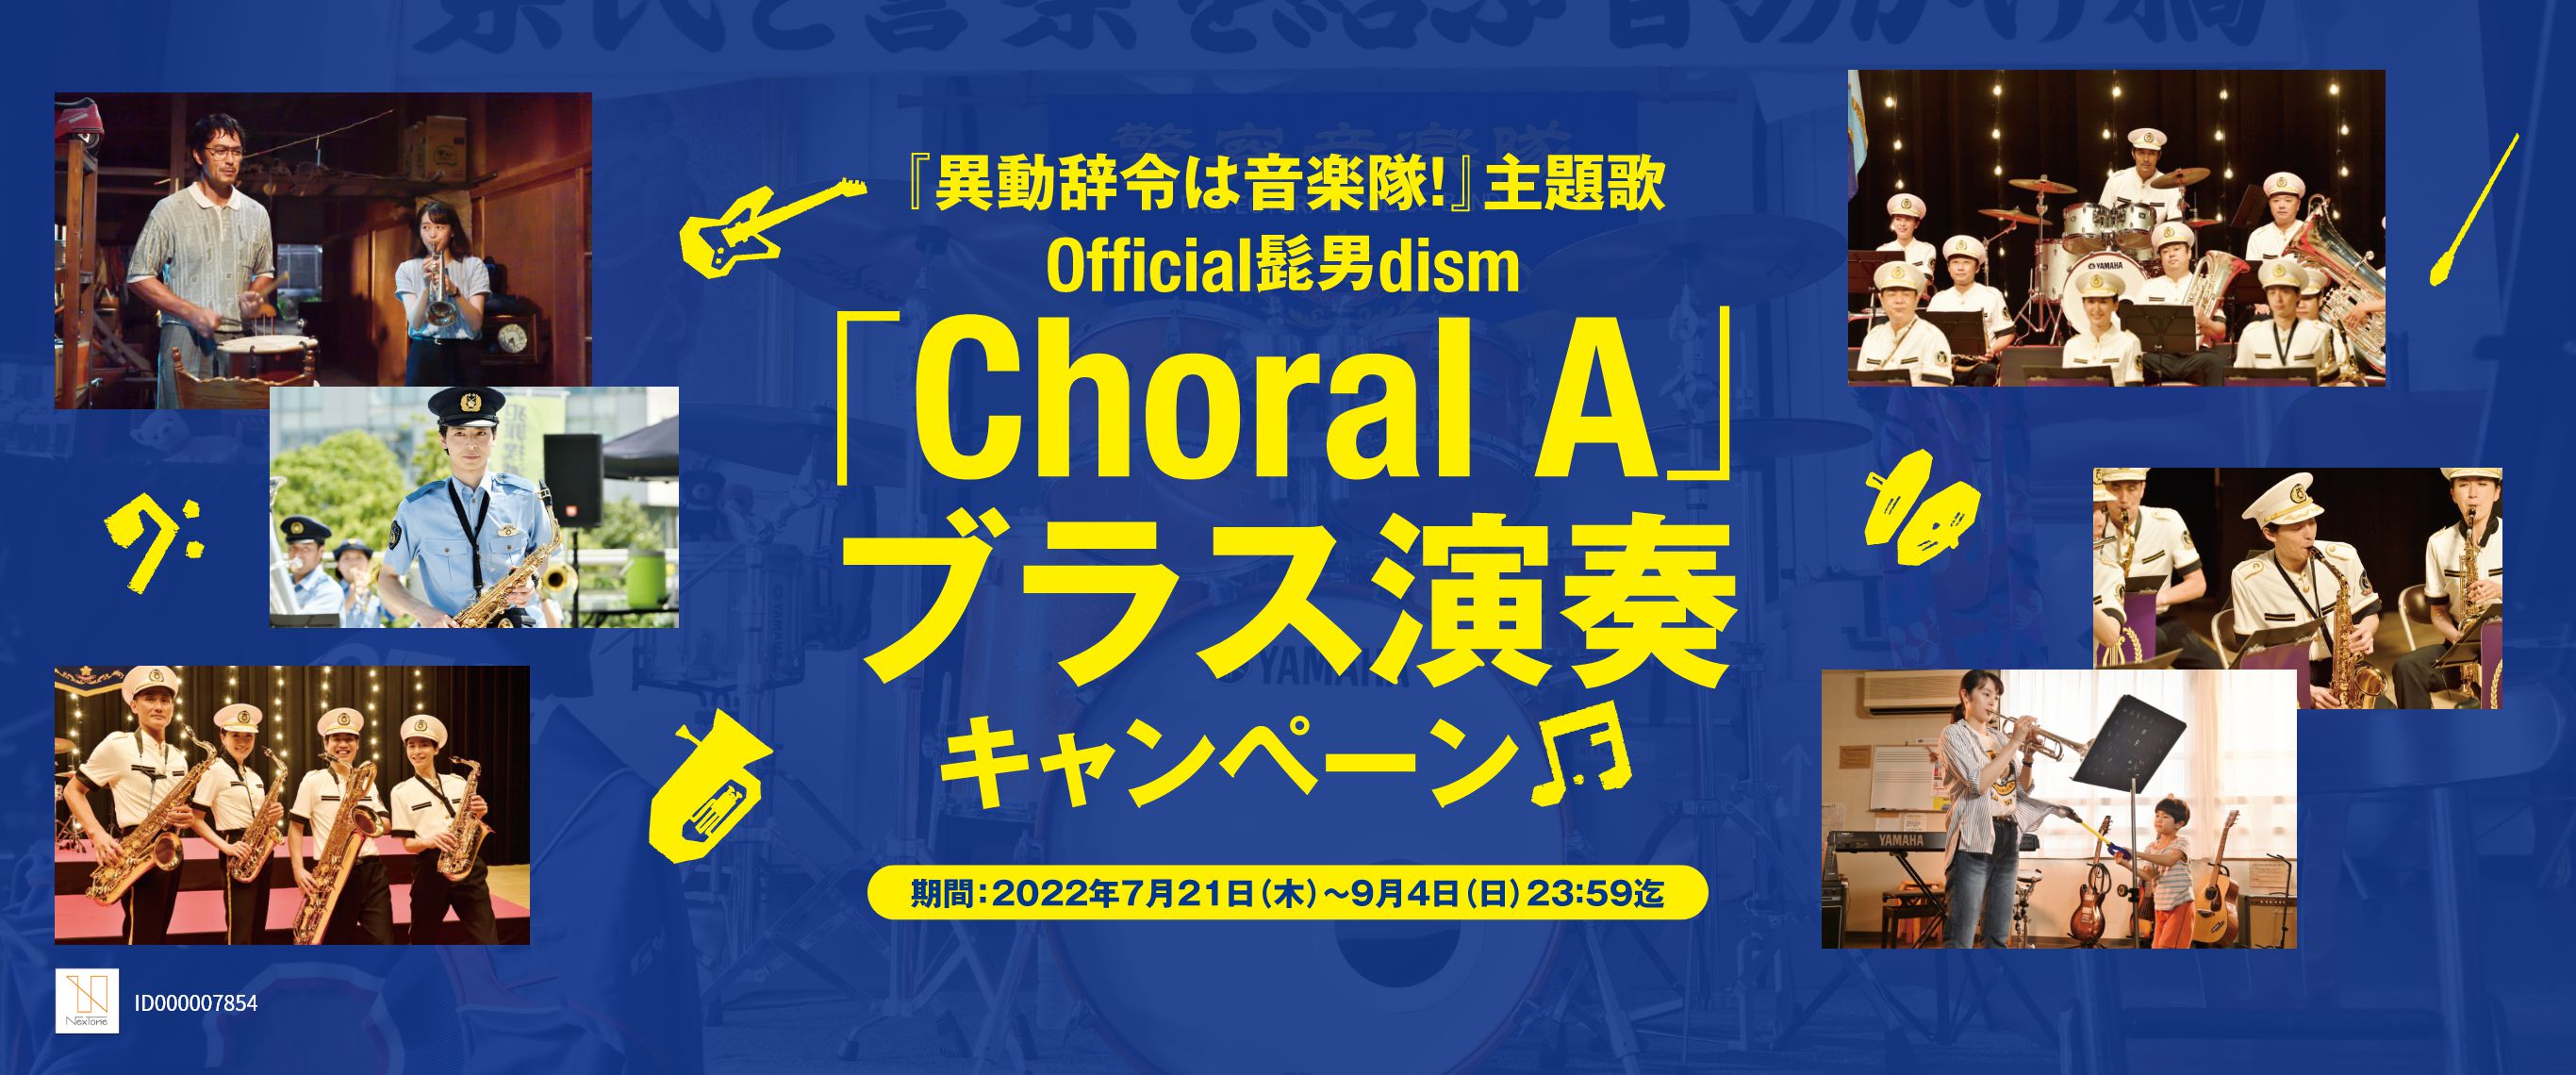 『異動辞令は音楽隊！』主題歌 Official髭男dism「Choral A」ブラス演奏キャンペーン 期間：2022年7月21日（木）～2022年9月4日（日）23：59迄